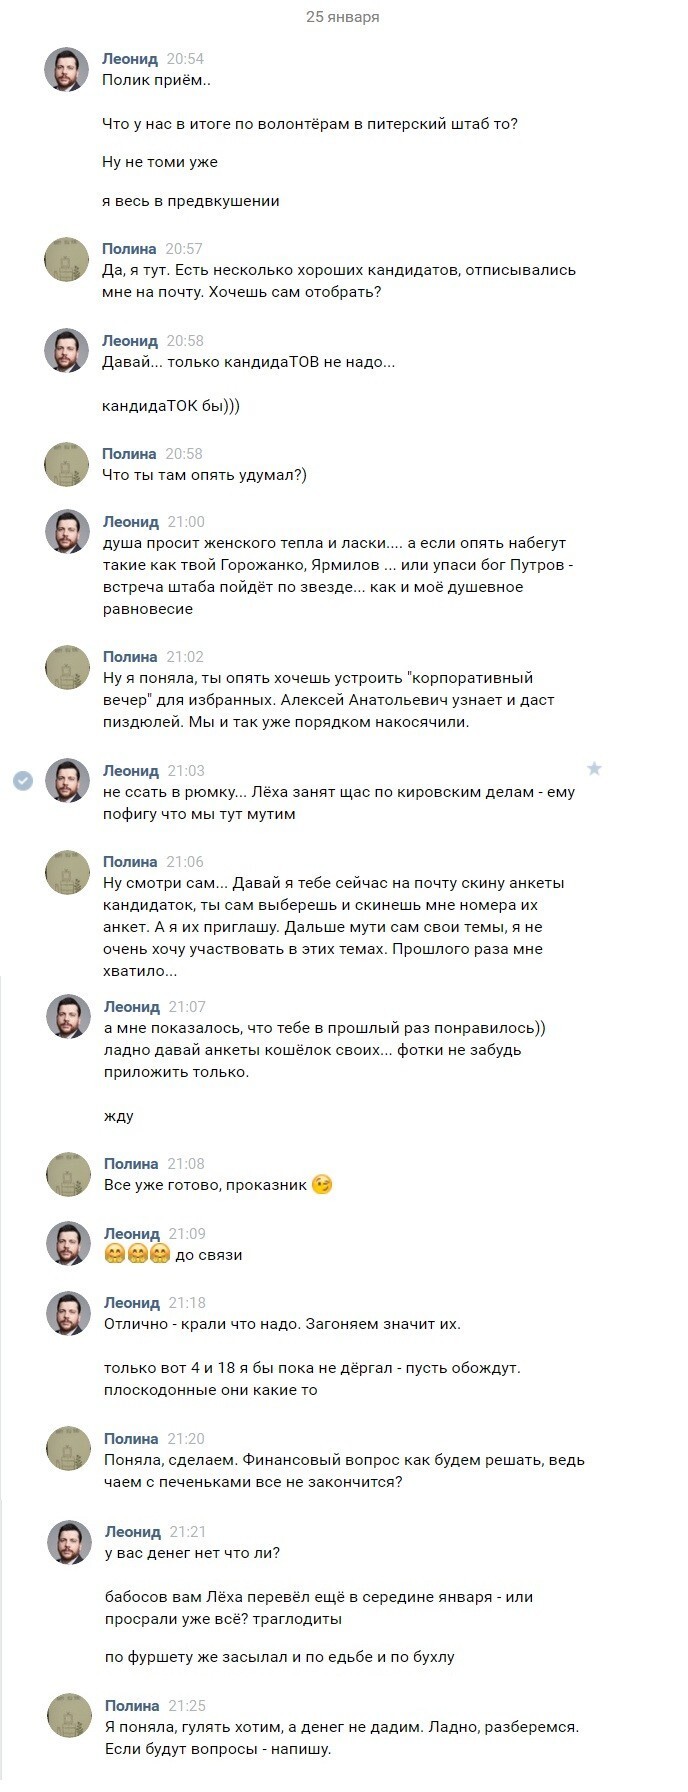  Переписка Леонида Волкова в вк: Трансвеститы, Наркотики и Навальный